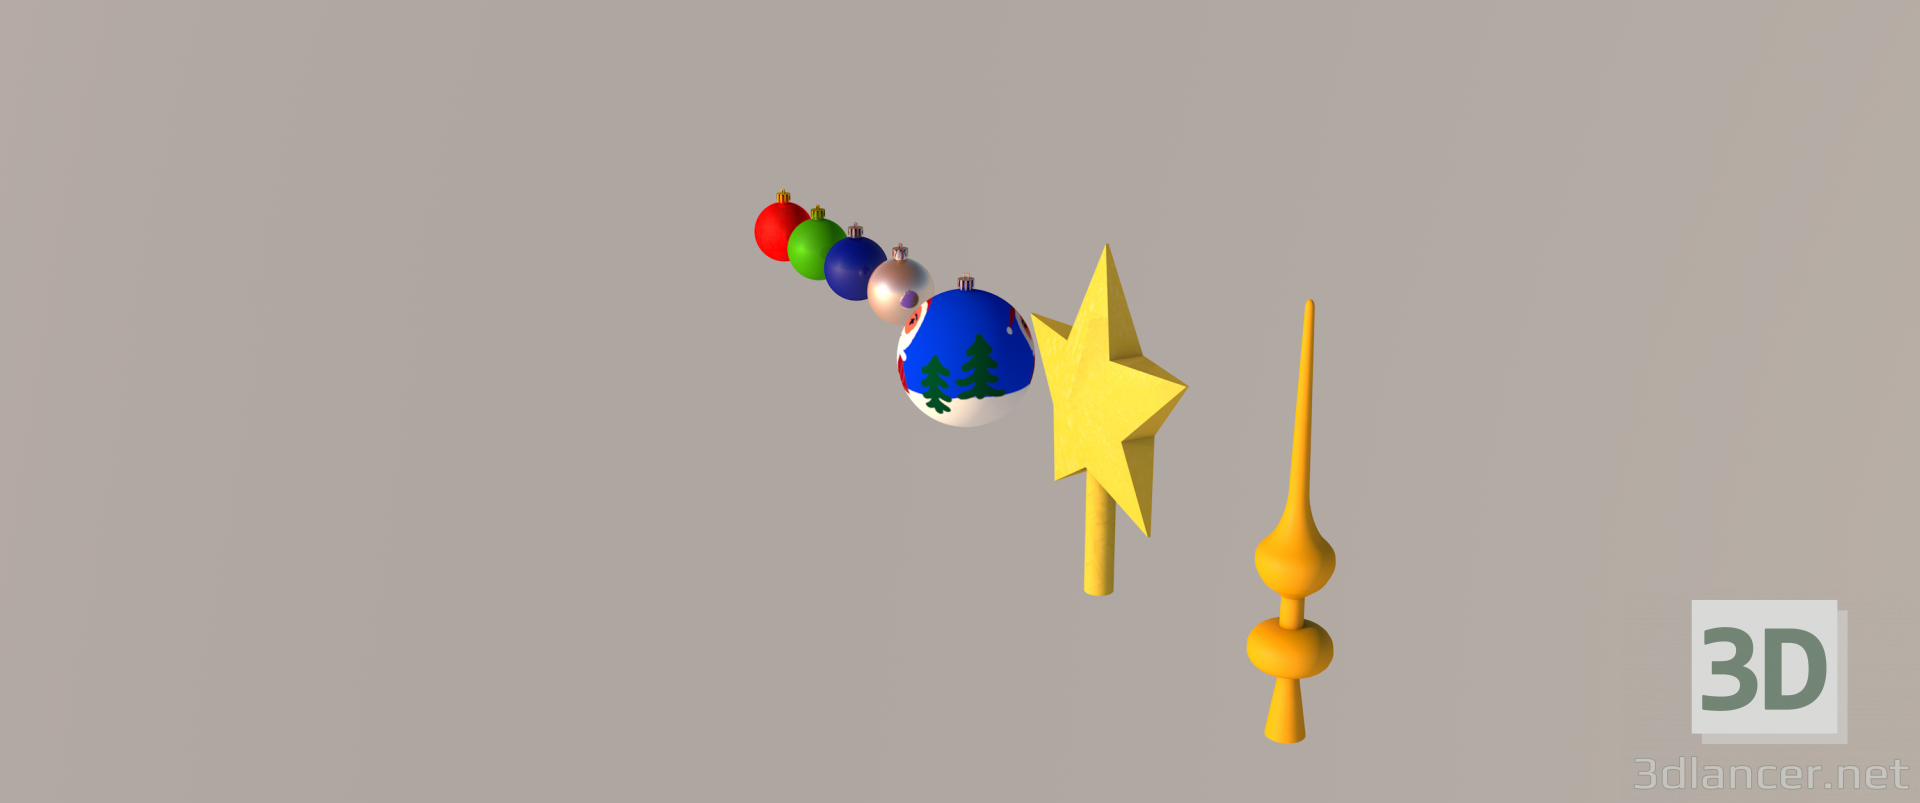 modèle 3D de ensemble de jouets de Noël acheter - rendu